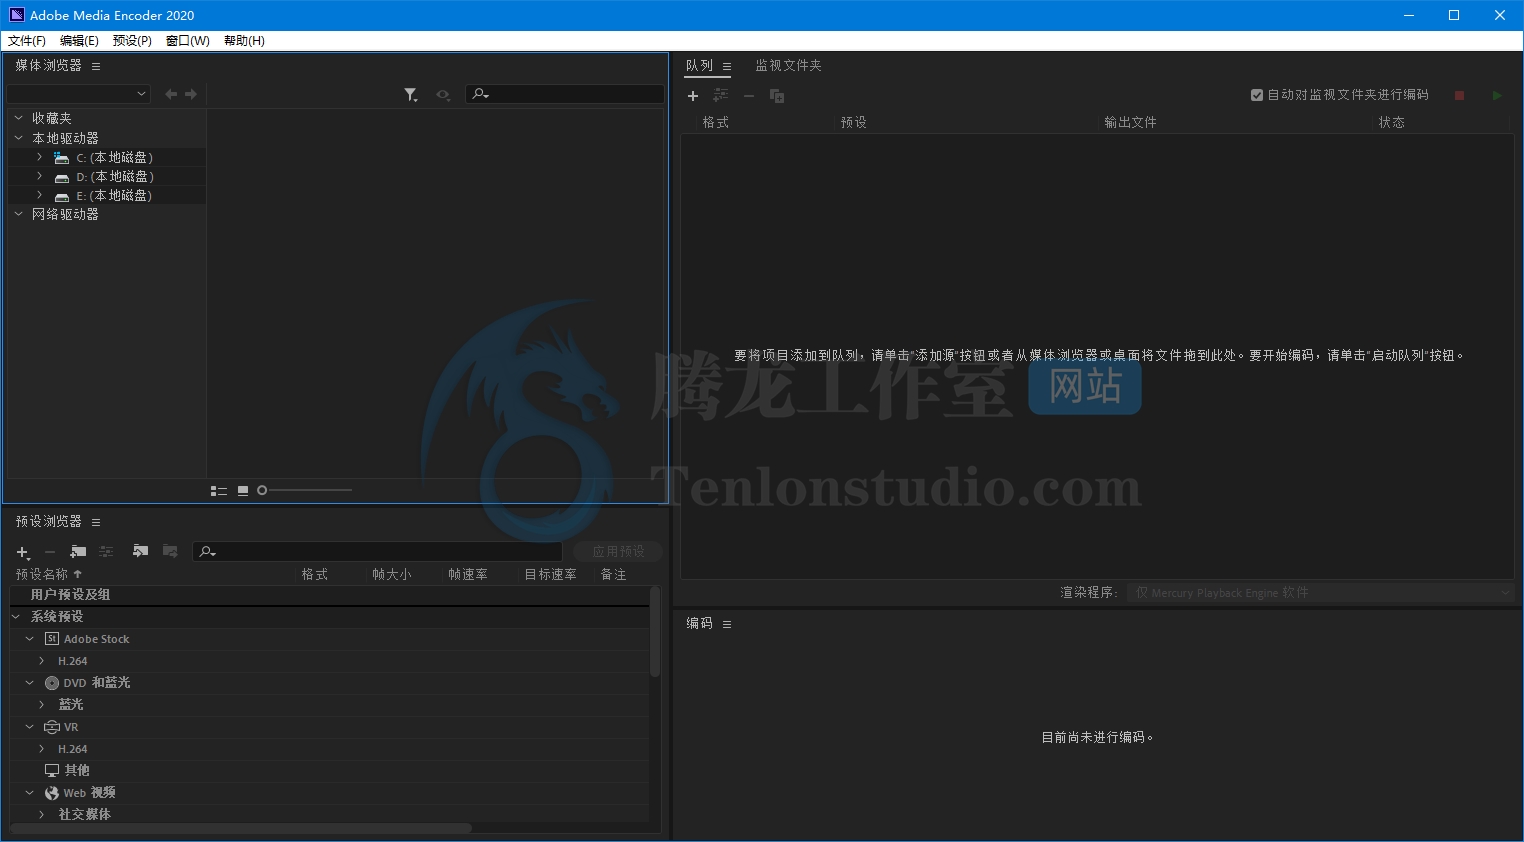 视频编码软件 Adobe Media Encoder 2020 v14.4.0.35 破解版